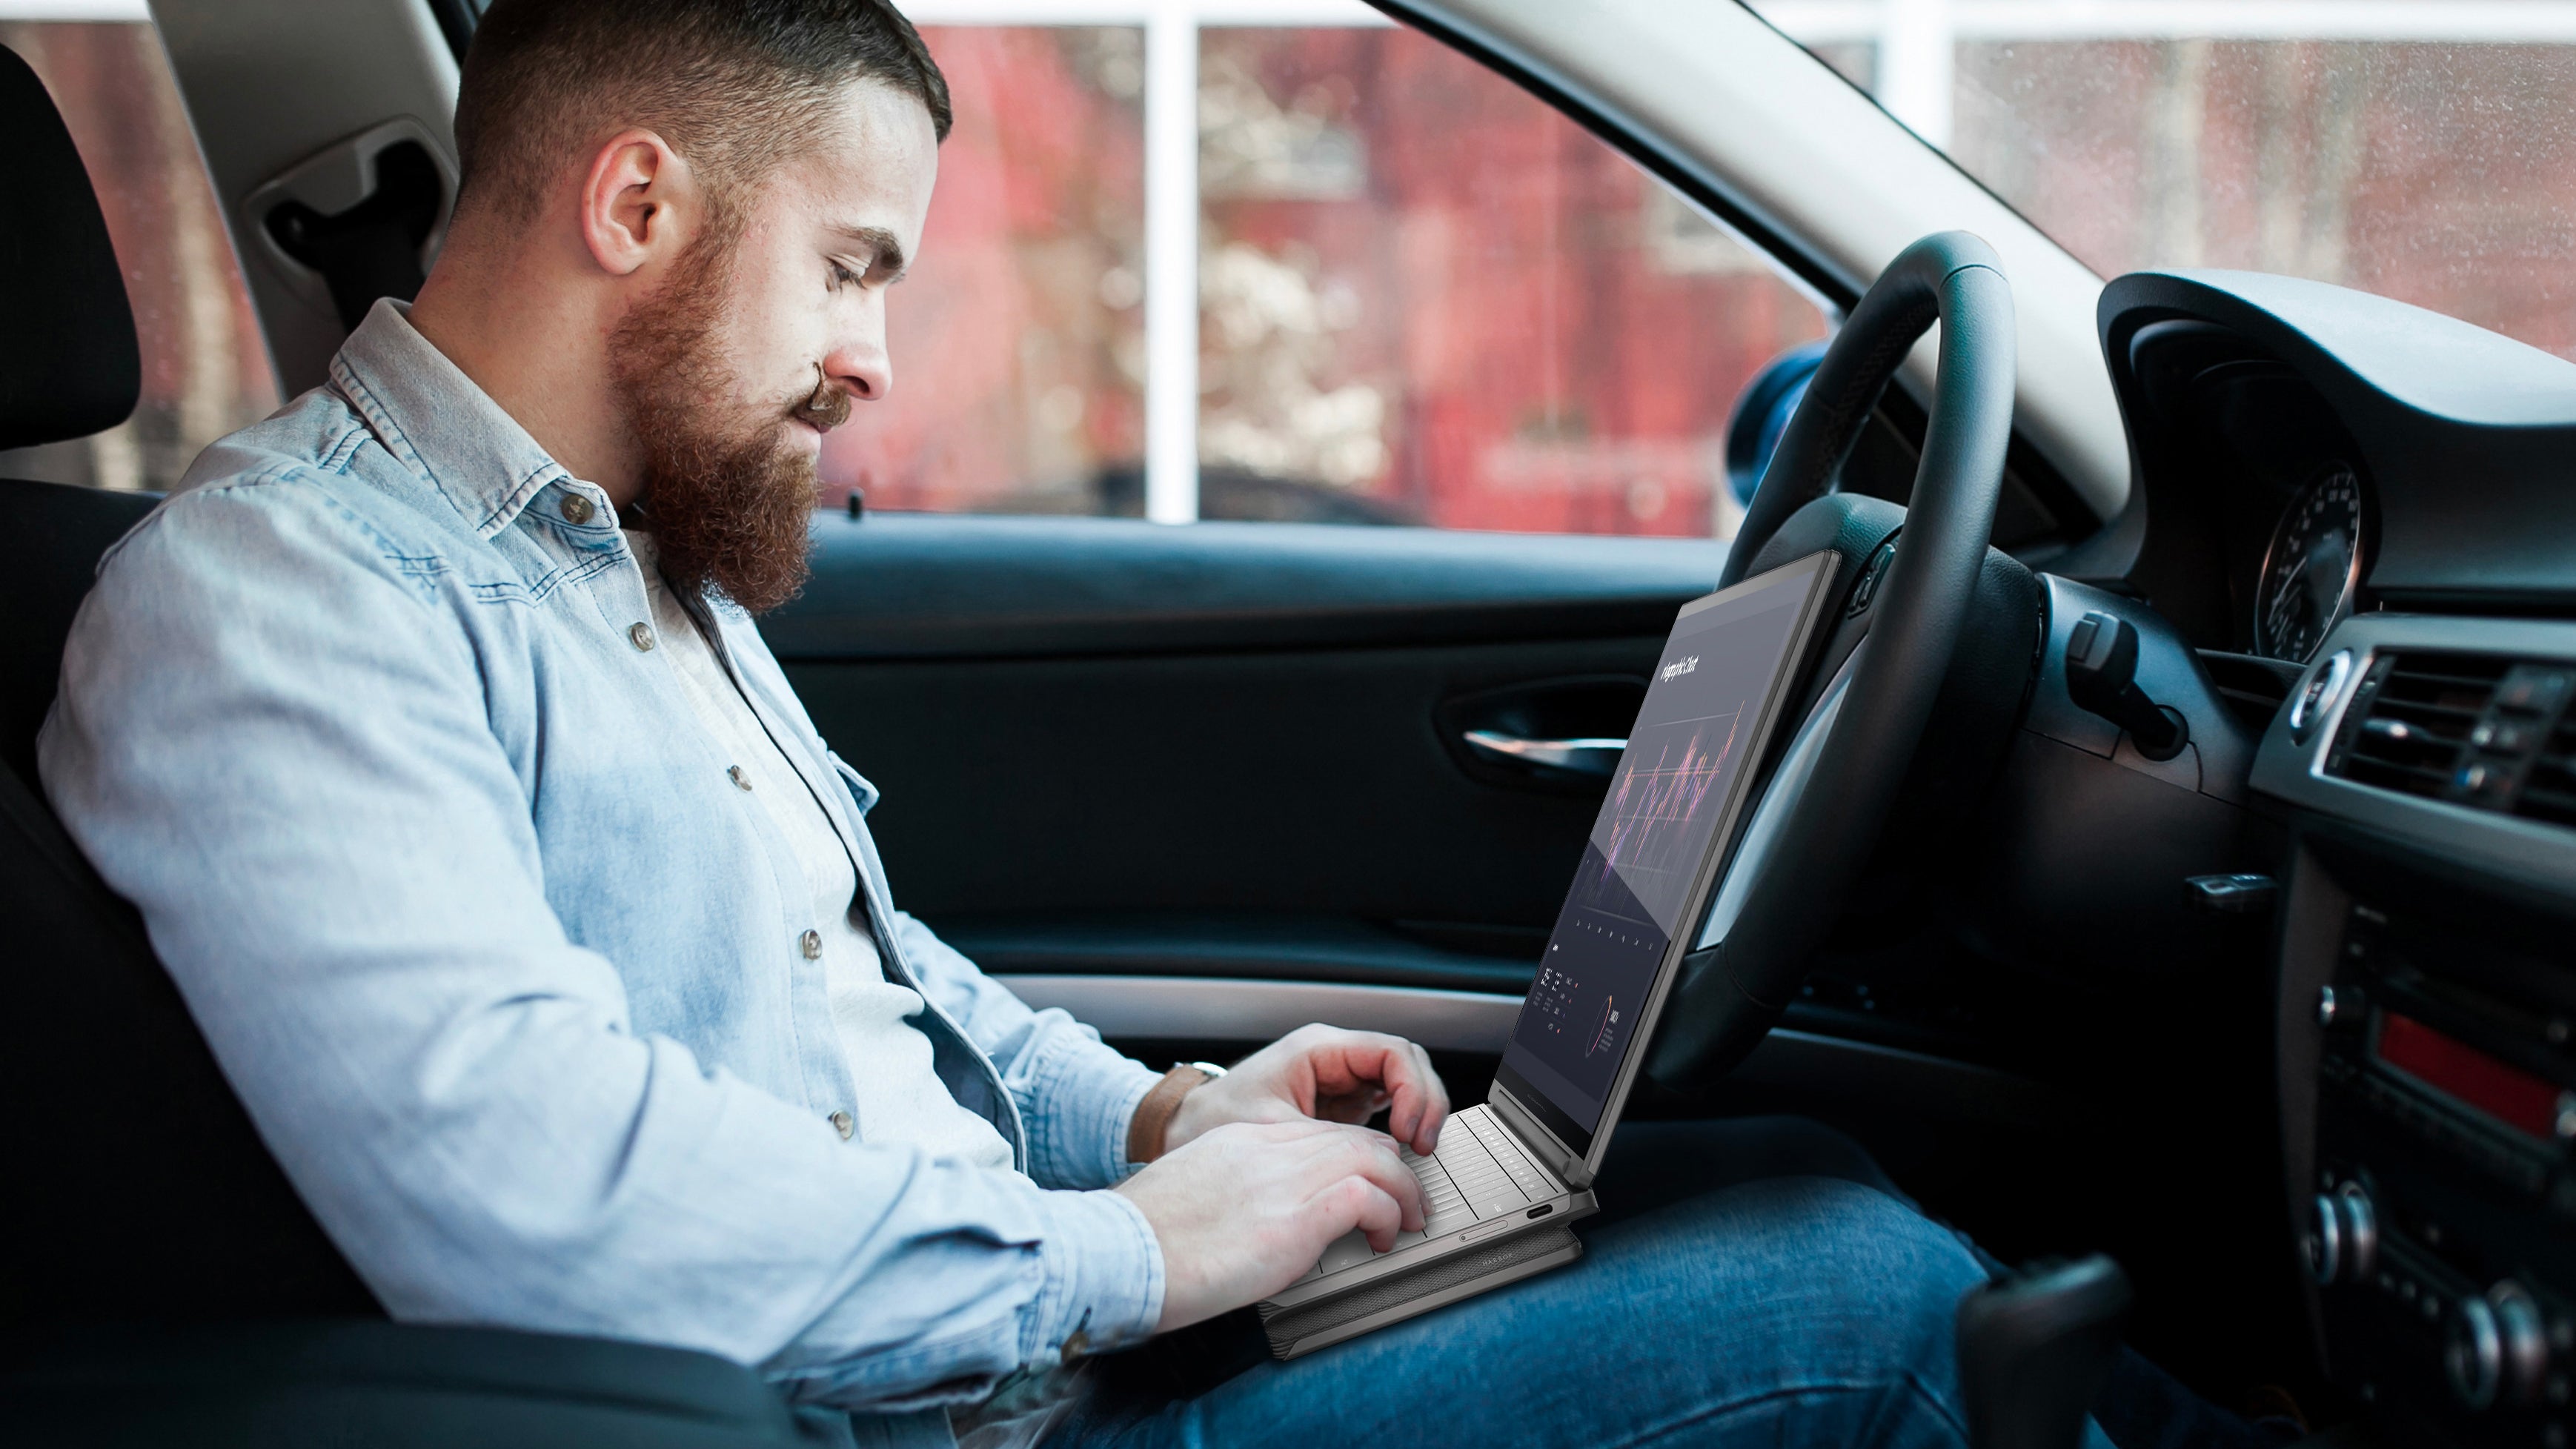 Se muestra a una persona usando una maqueta del concepto de computadora portátil Compal Electronics Mobile Office mientras está sentada en el asiento del conductor de un vehículo.